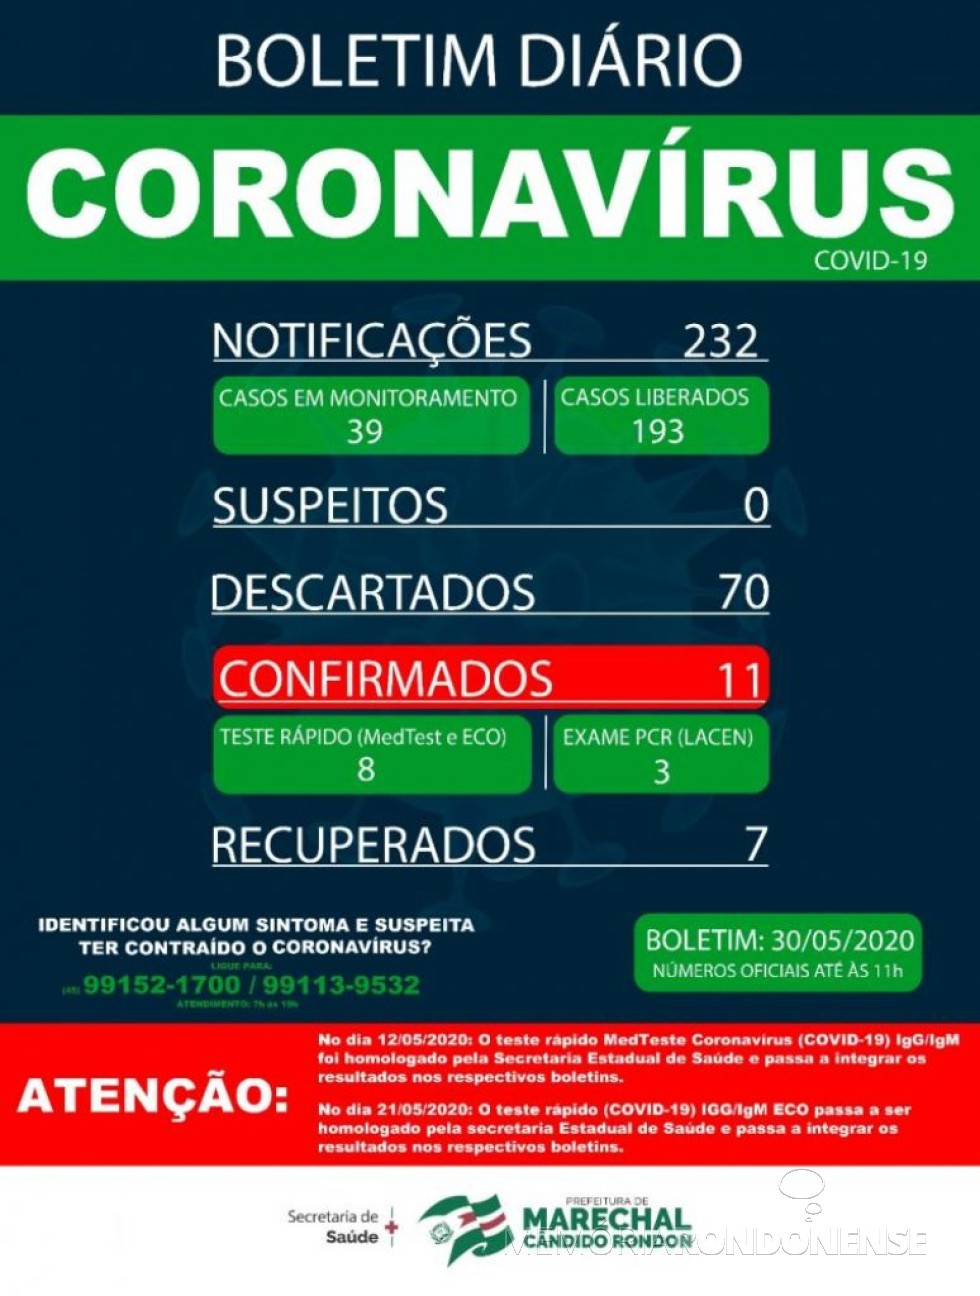 Boletim epidemiológico da Secretaria de Saúde de Marechal Cândido Rondon informando sobre a situação da pandemia do novo coronavírus no município.
Imagem: Acervo Imprensa PM-MCR - FOTO 16 - 